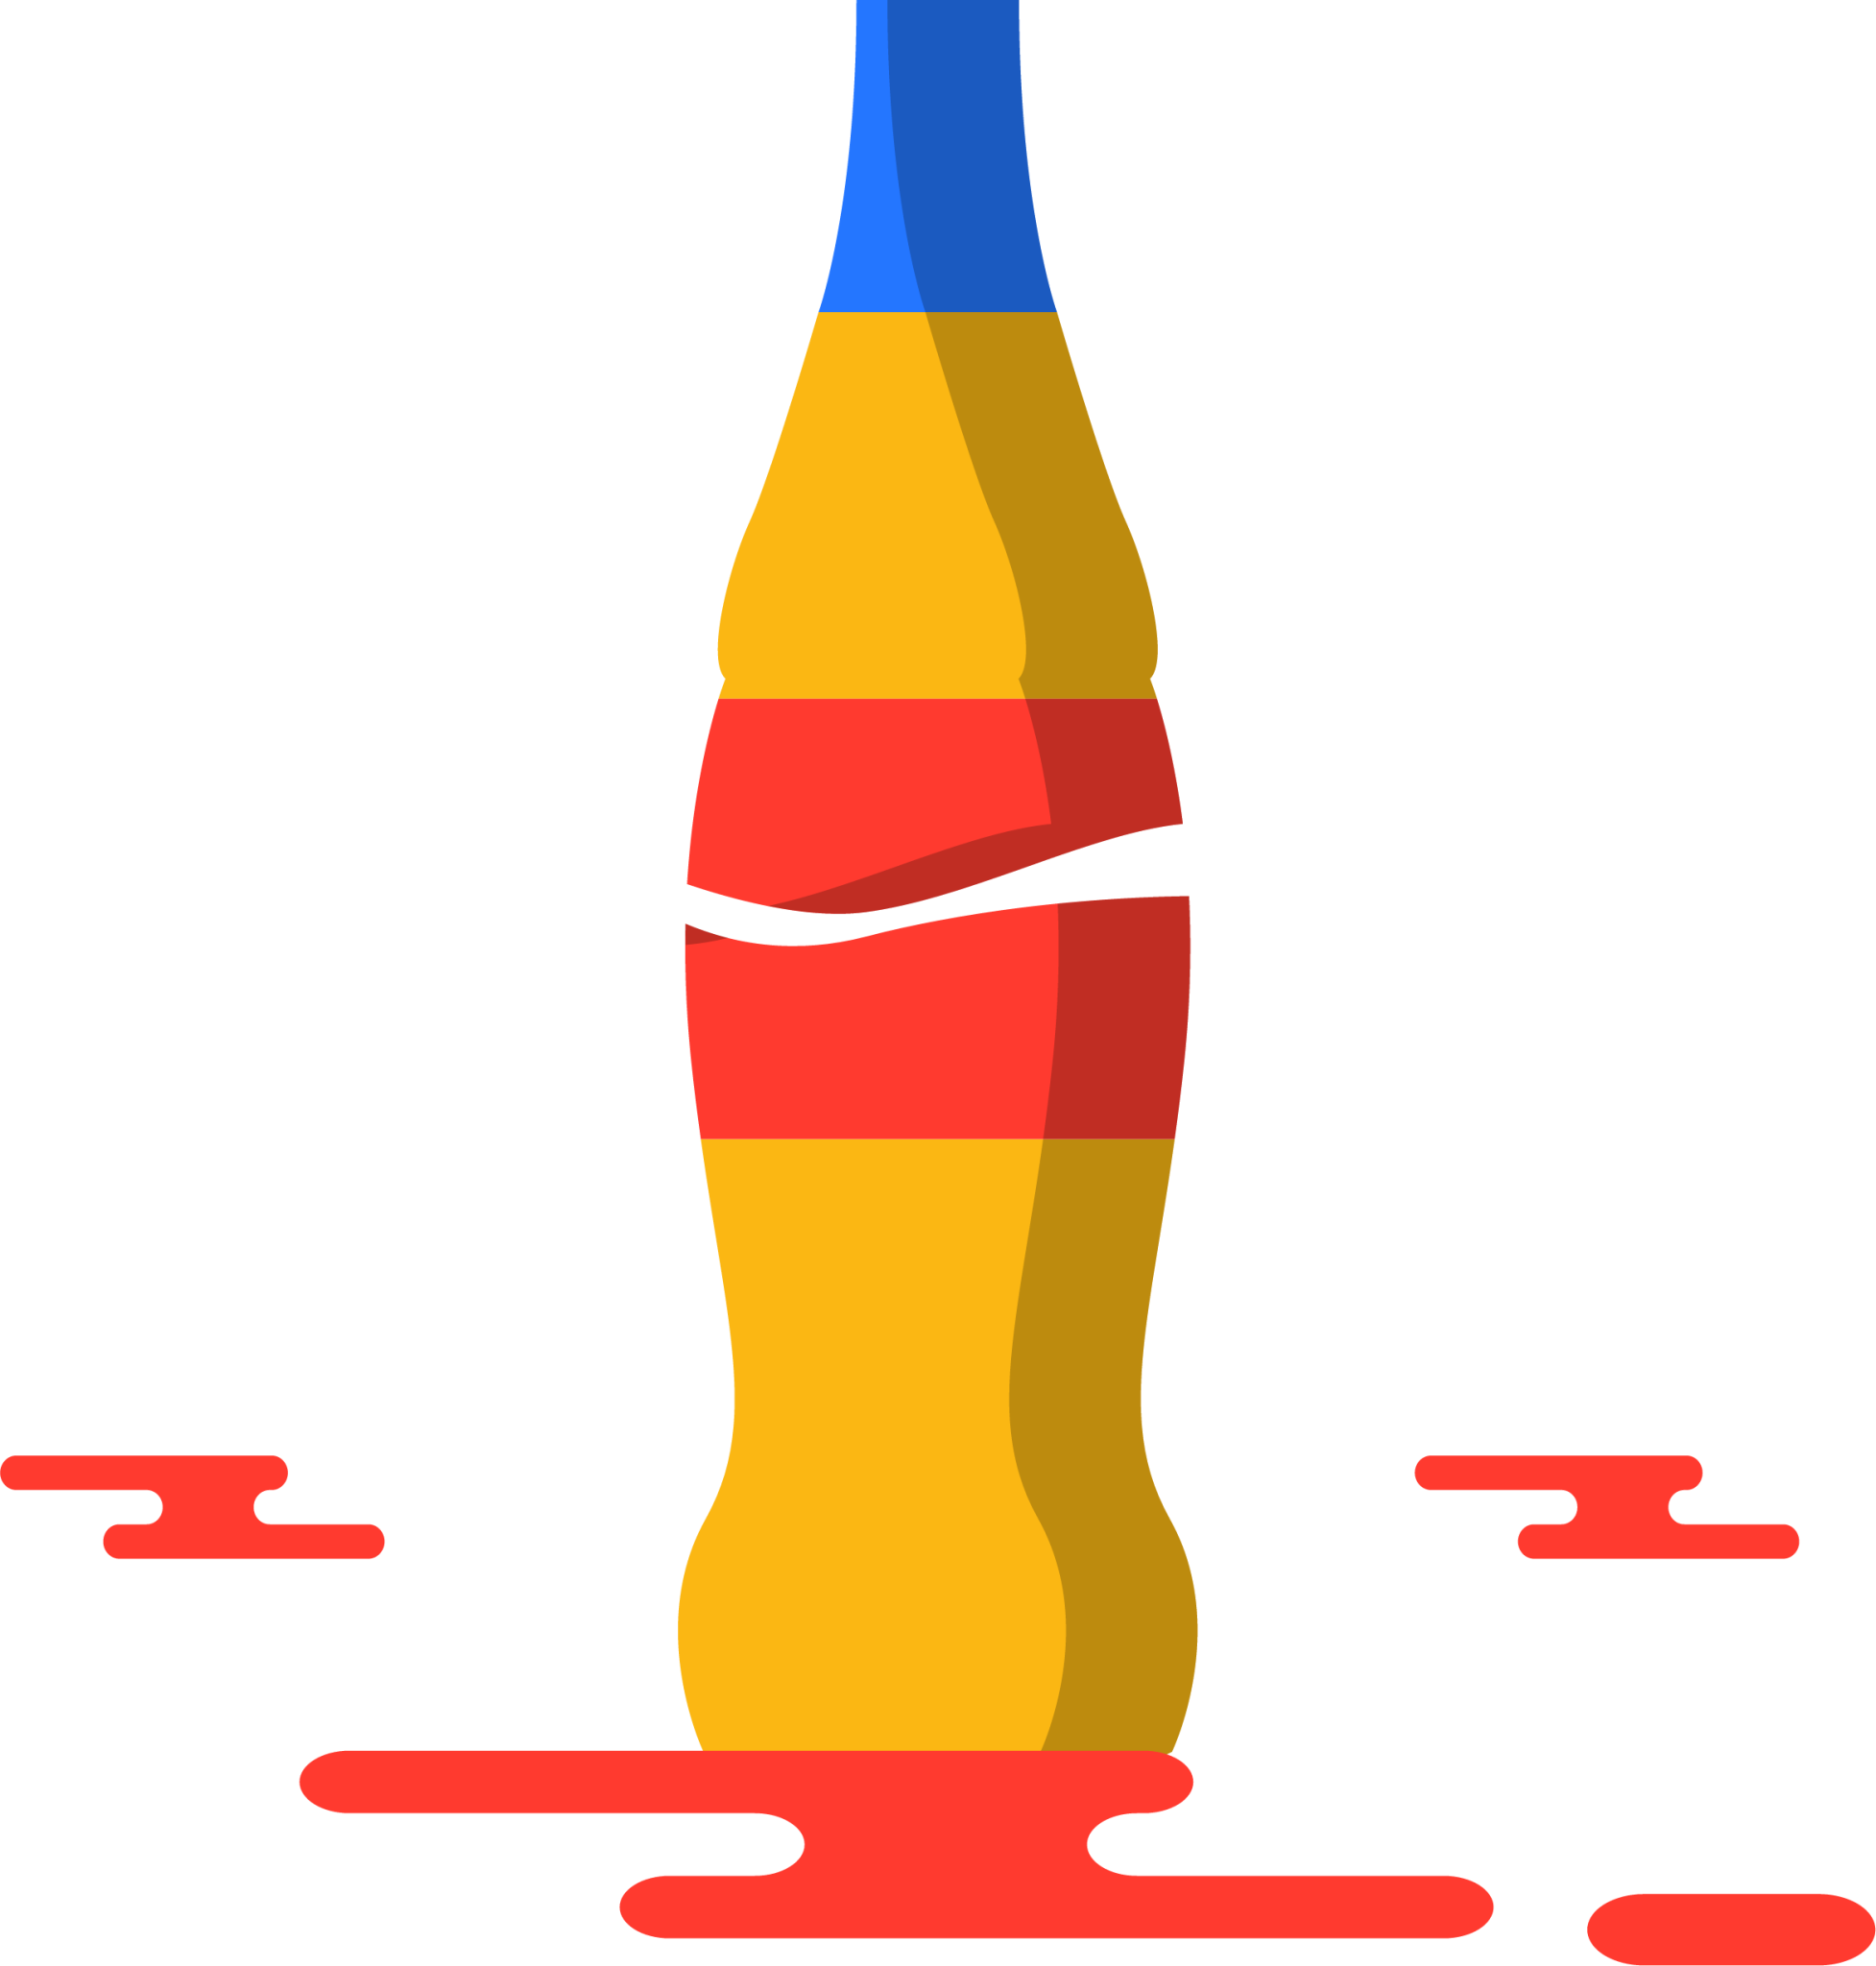 coke bottle illustration